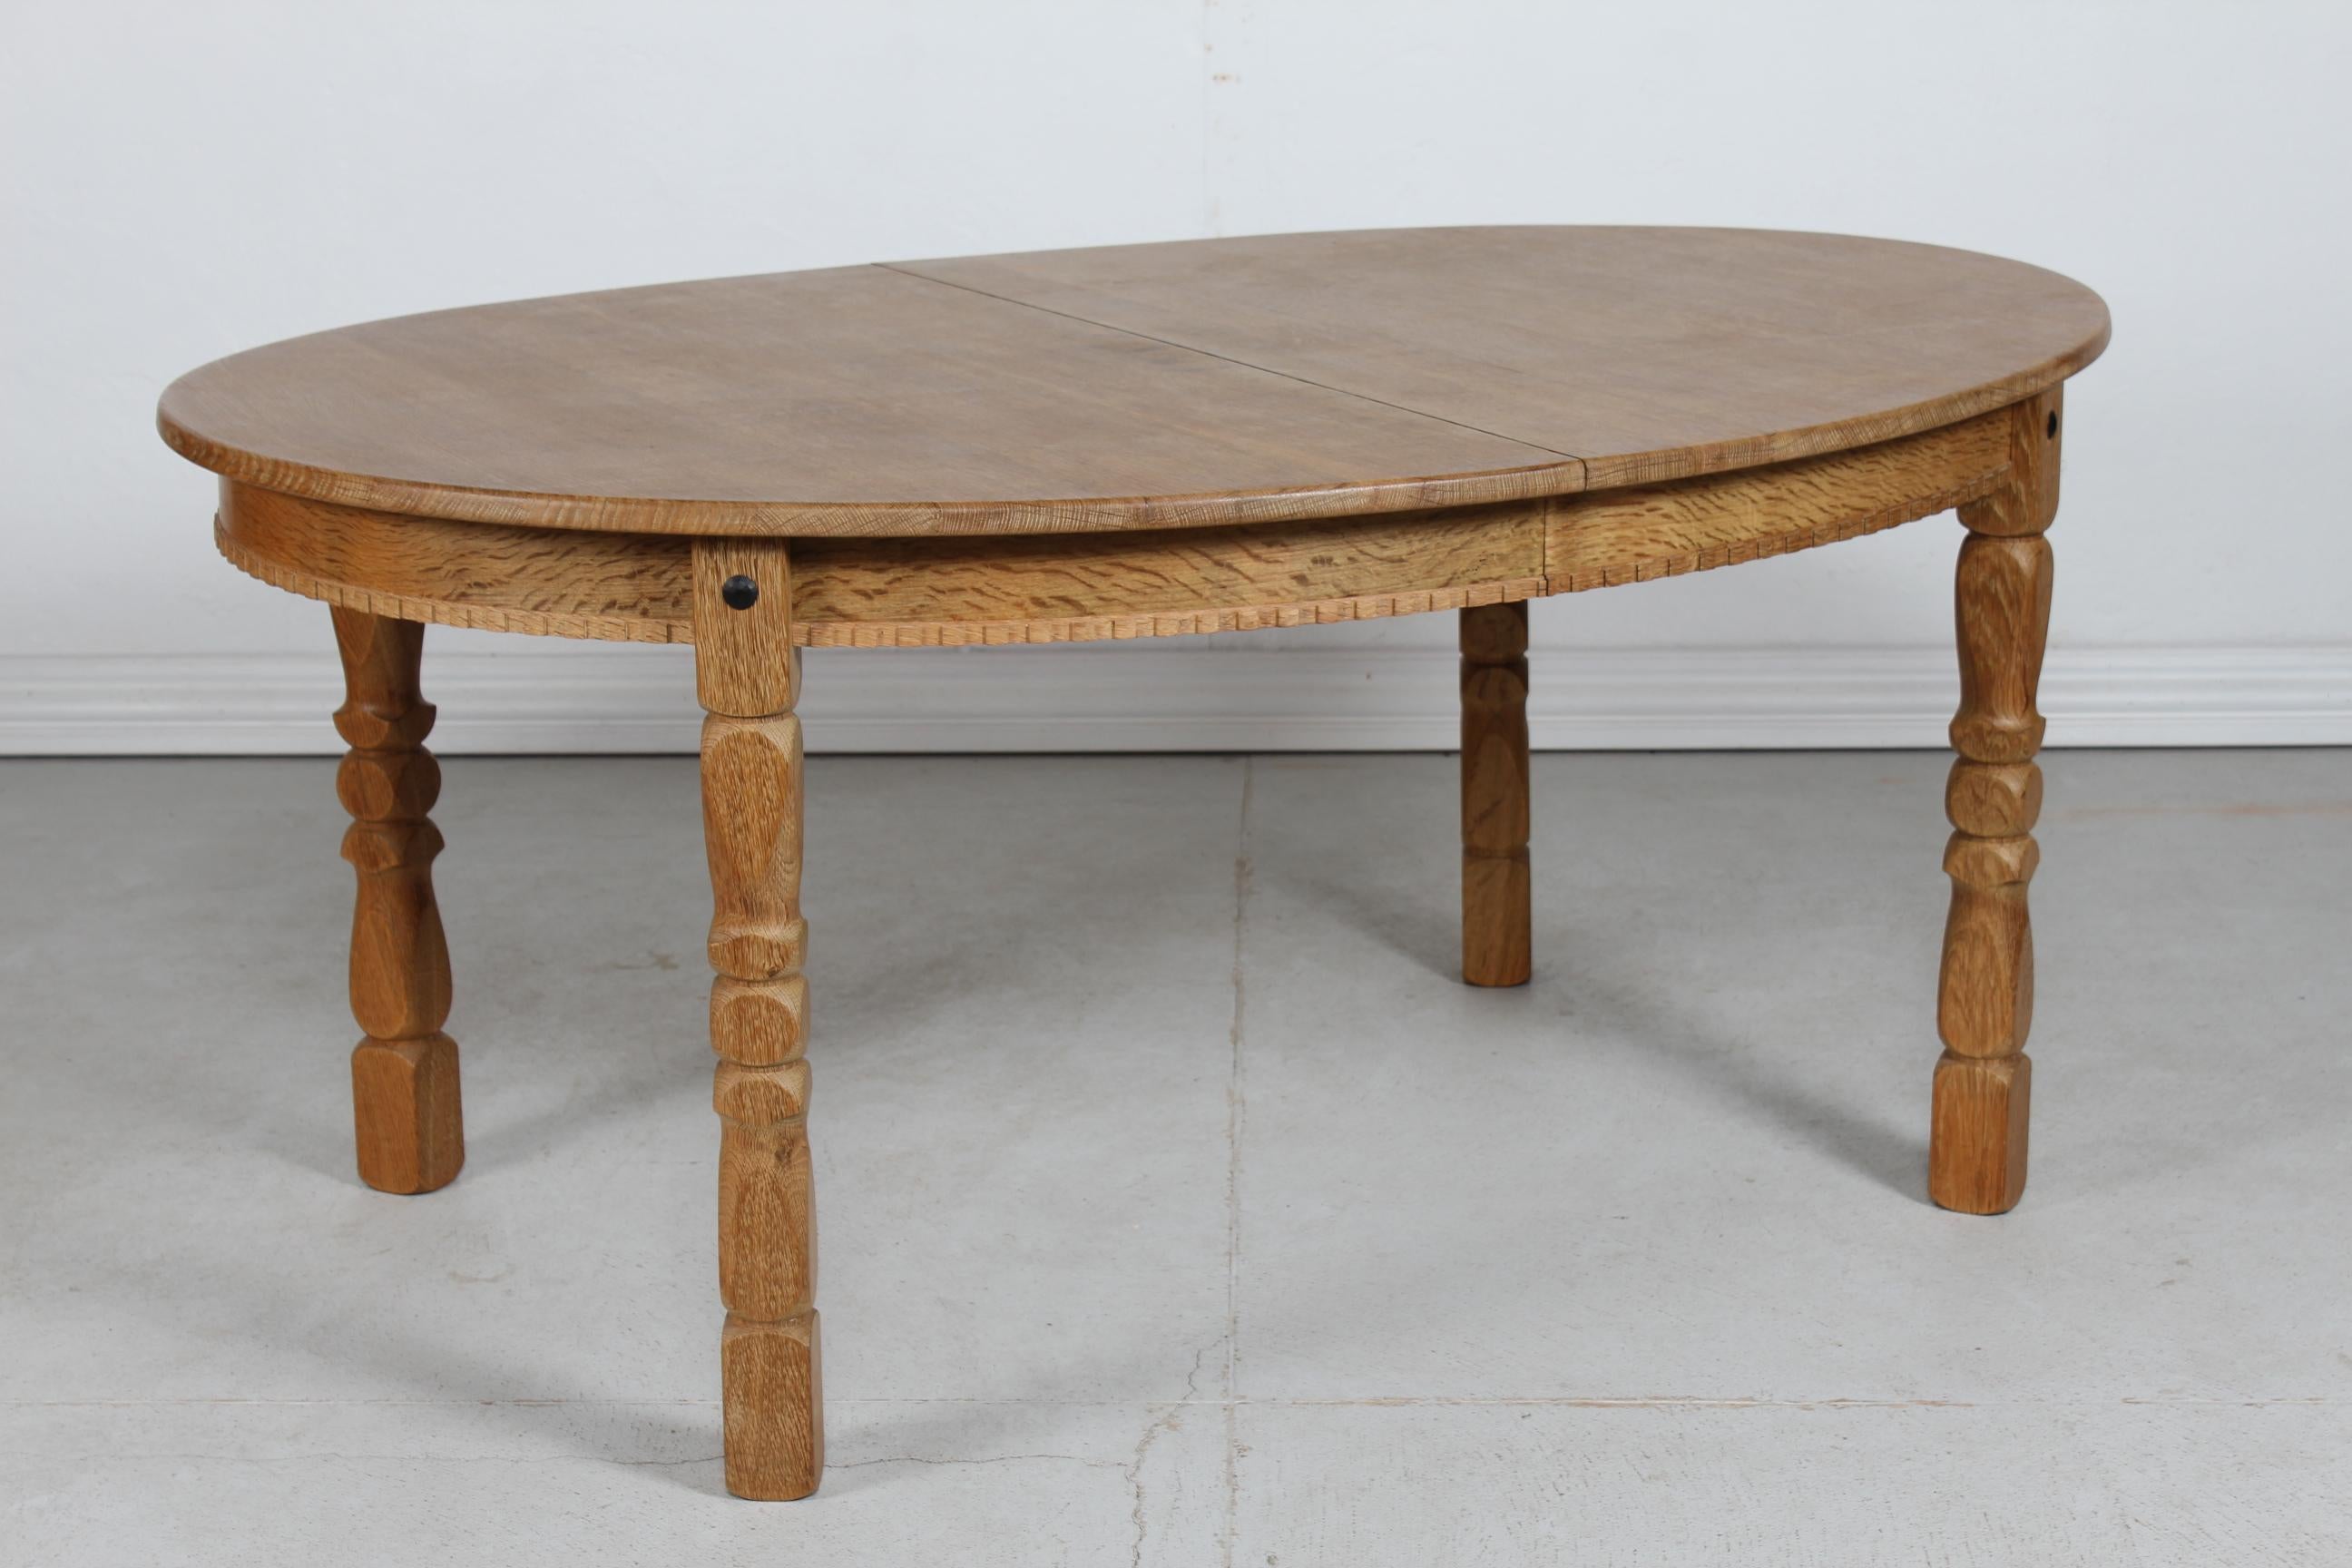 Table de salle à manger ovale à rallonge de style Henning Kjærnulf, vintage danois, avec pieds tournés et sculptés.
Fabriqué au Danemark dans les années 1970. Probablement par EG Møbler.

La table est fabriquée en bois massif et en placage de